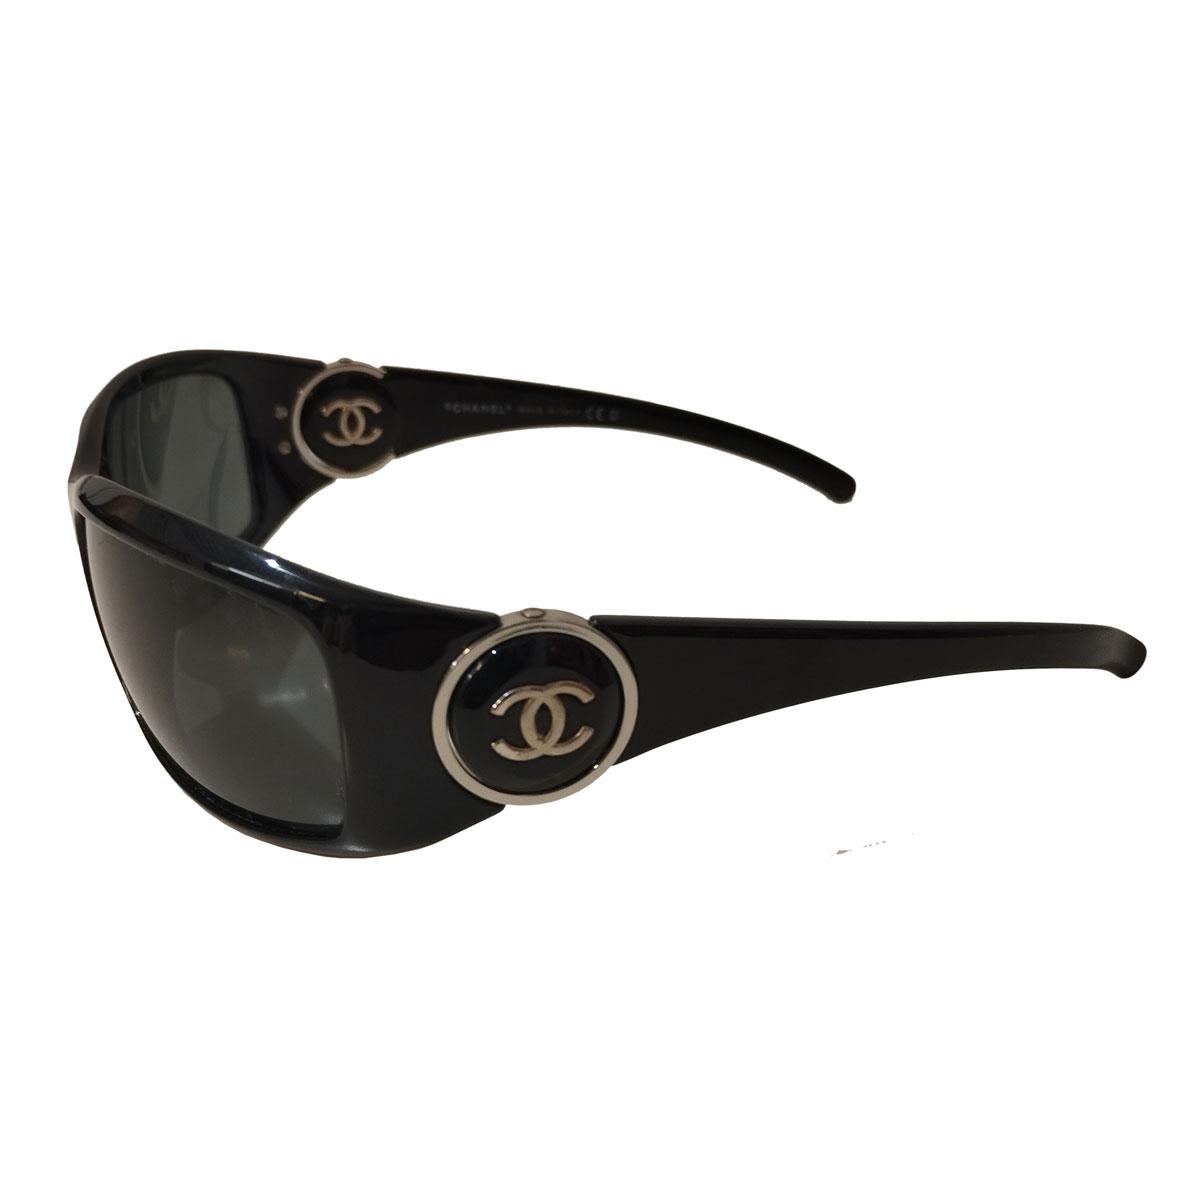 Sunglasses
6030
CC on sides
Black frames
Dark lenses
Frame width cm 13,5 (5,3 inches)
Light signs on lenses